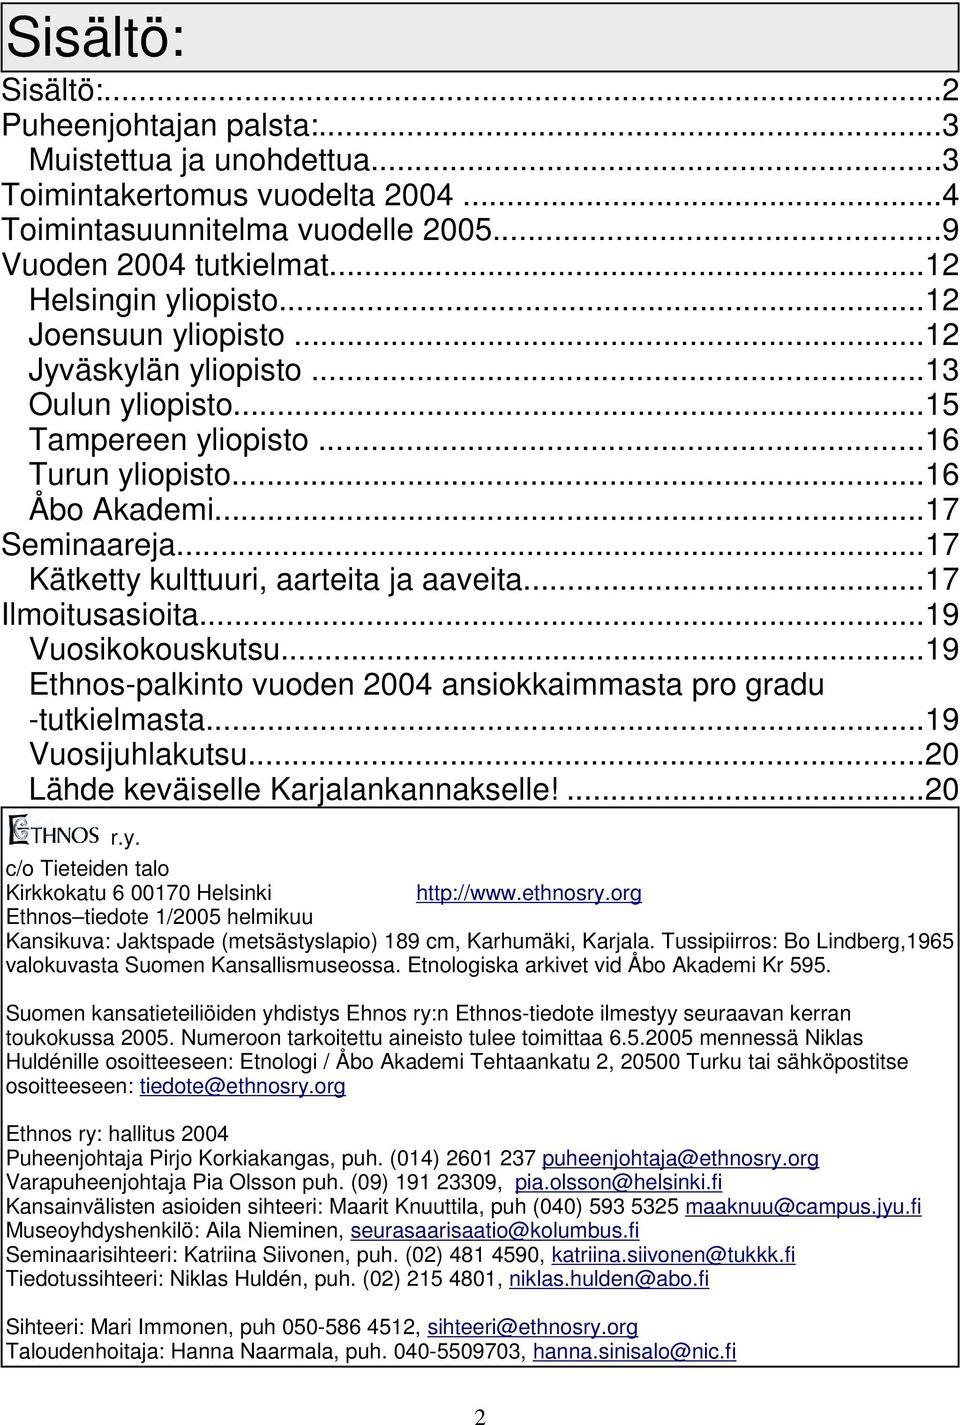 ..17 Ilmoitusasioita...19 Vuosikokouskutsu...19 Ethnos-palkinto vuoden 2004 ansiokkaimmasta pro gradu -tutkielmasta...19 Vuosijuhlakutsu...20 Lähde keväiselle Karjalankannakselle!...20 r.y.